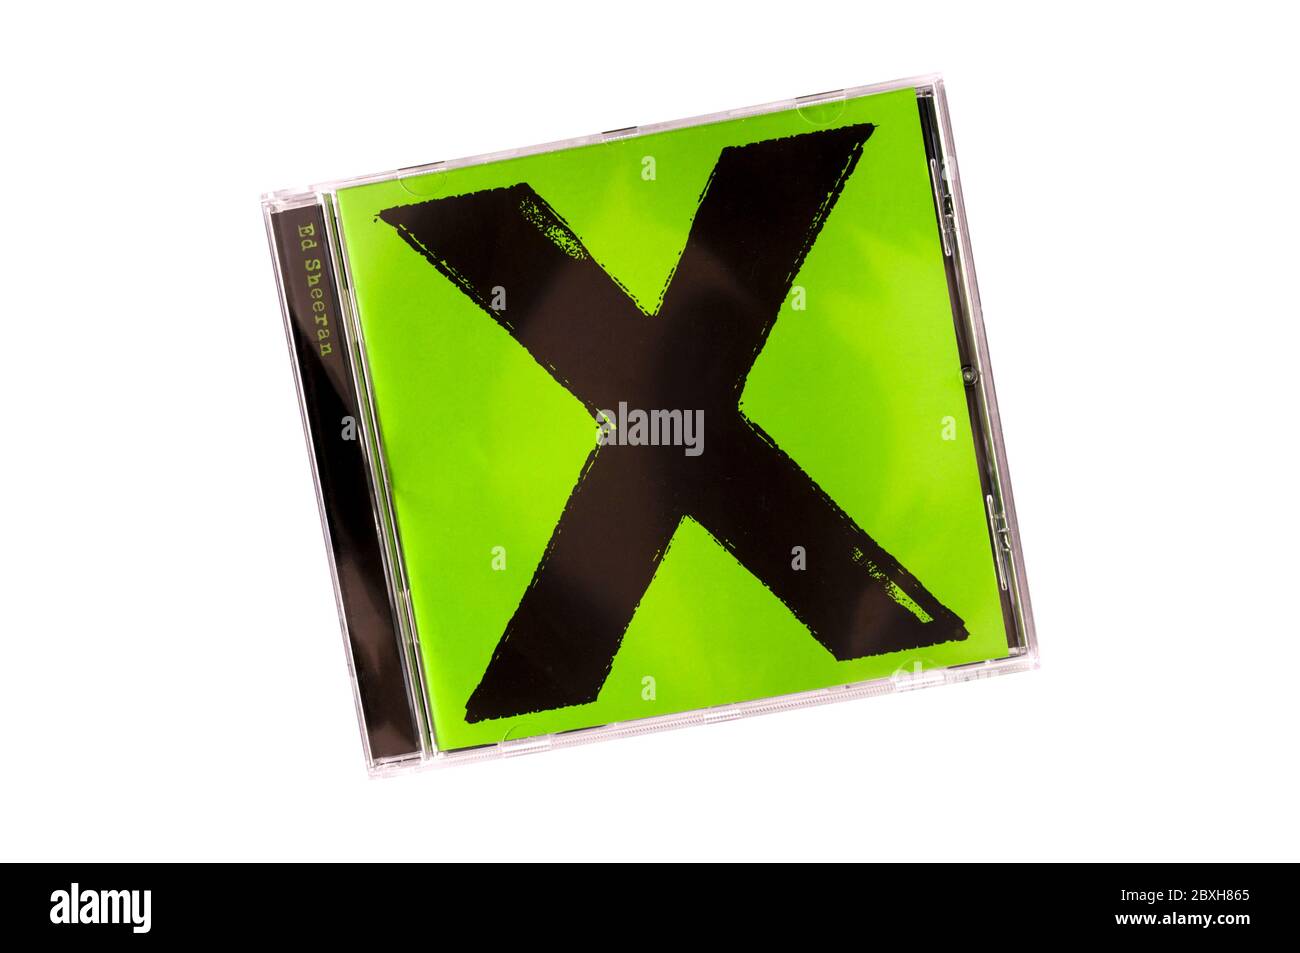 X, prononcé Multiply, de Ed Sheeran, était son deuxième album studio. Il a été publié en 2014. Banque D'Images